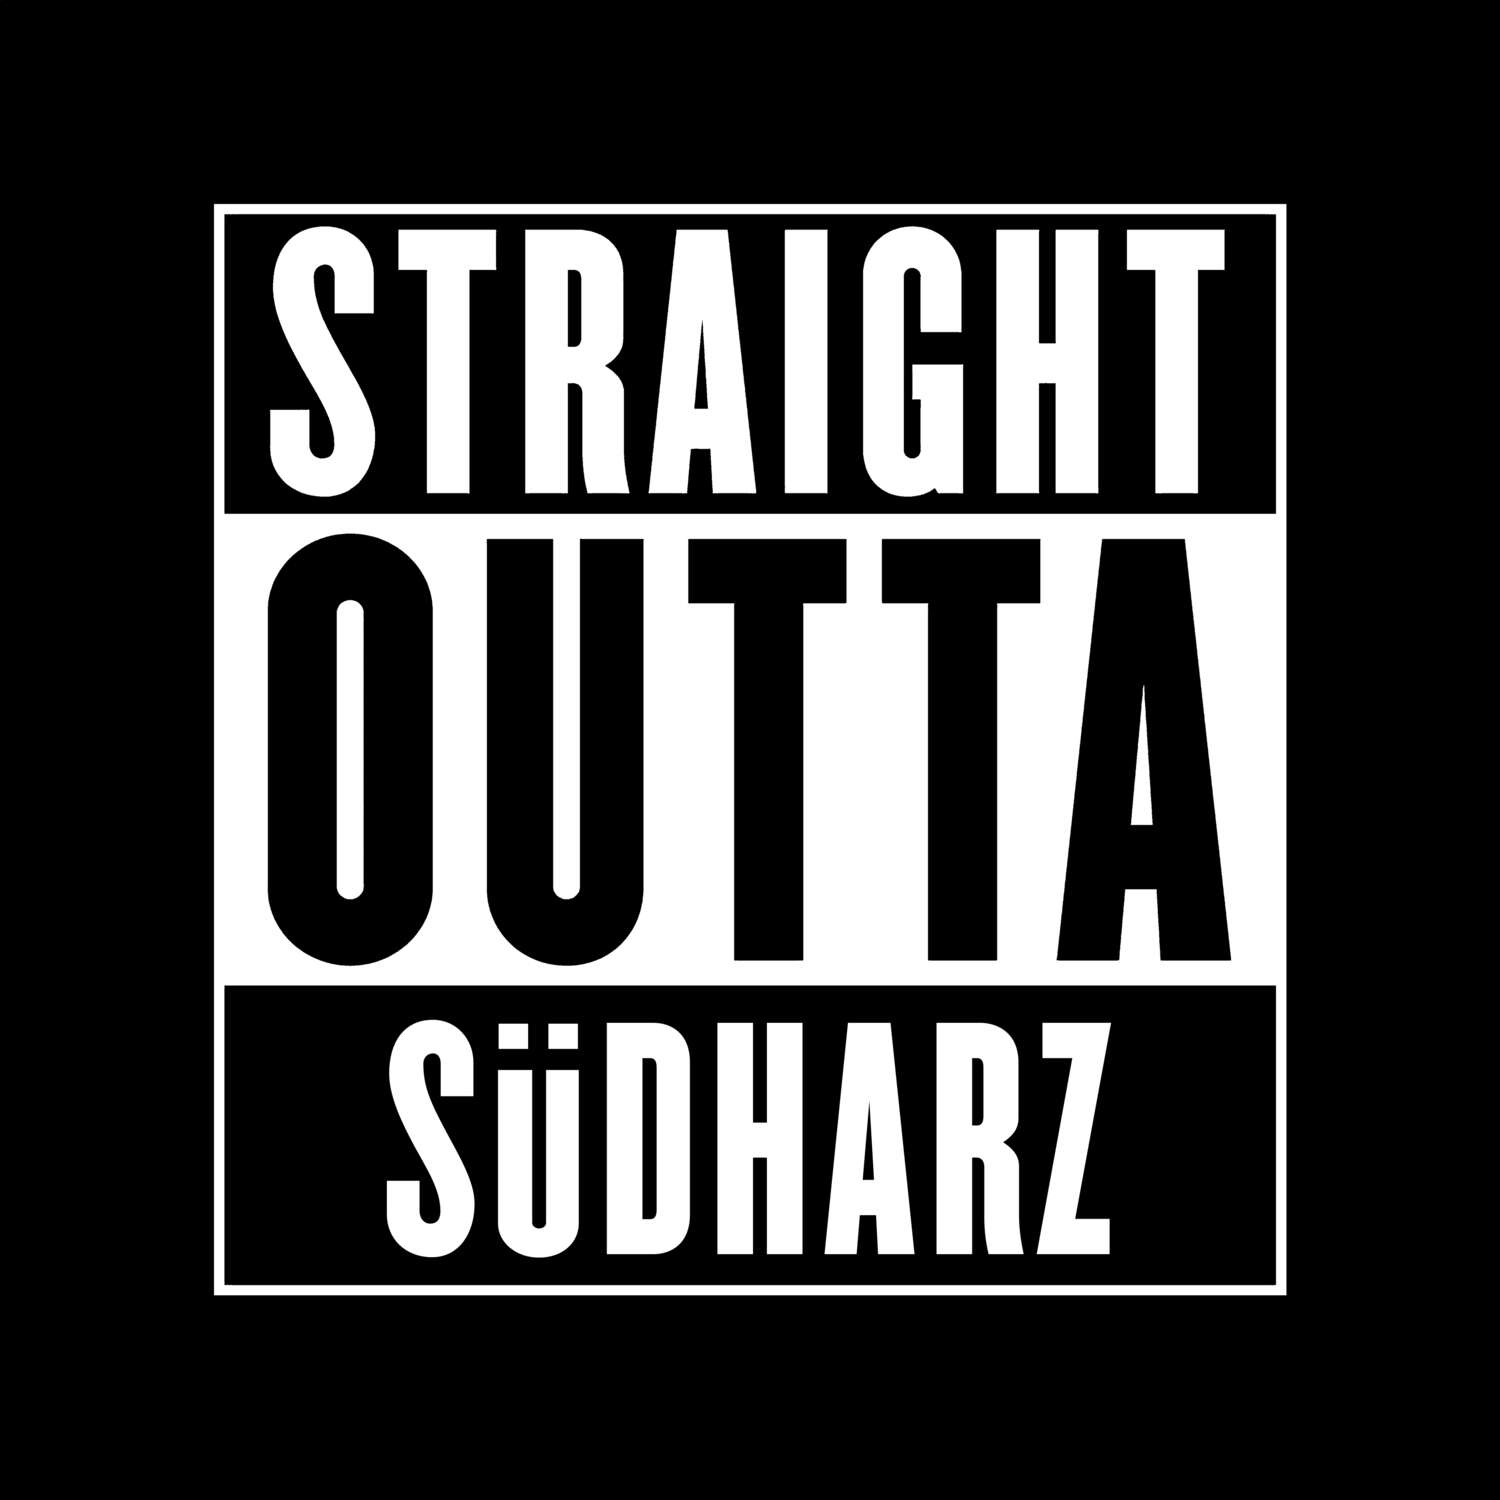 Südharz T-Shirt »Straight Outta«